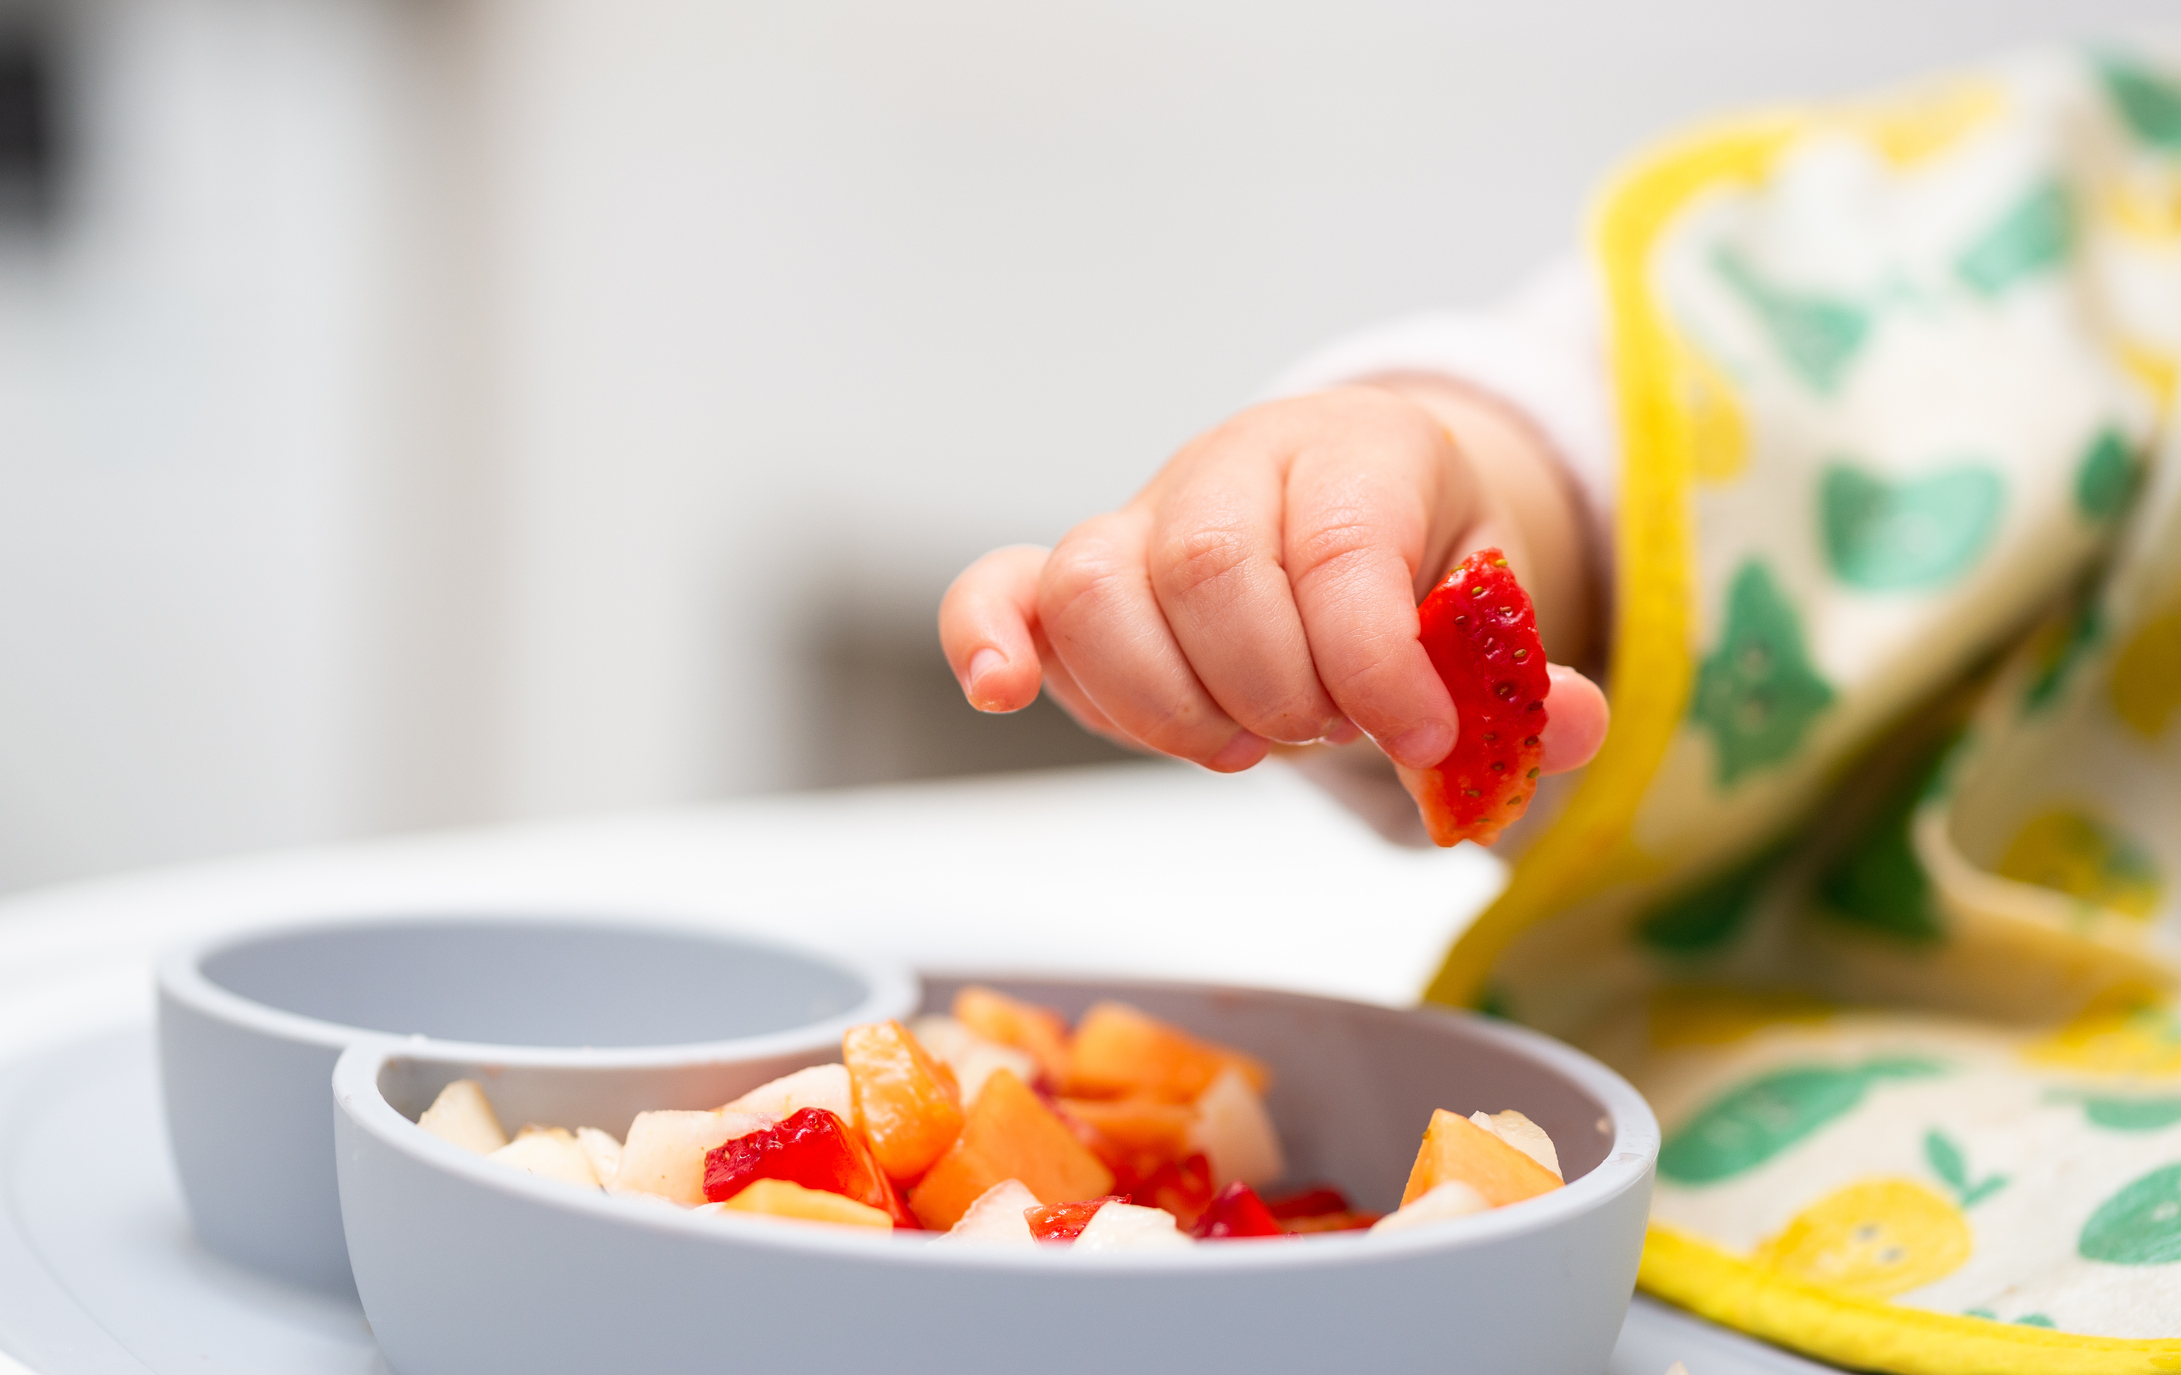 Babyhand greift nach einem Stück Erdbeere von einem Teller voller Obst